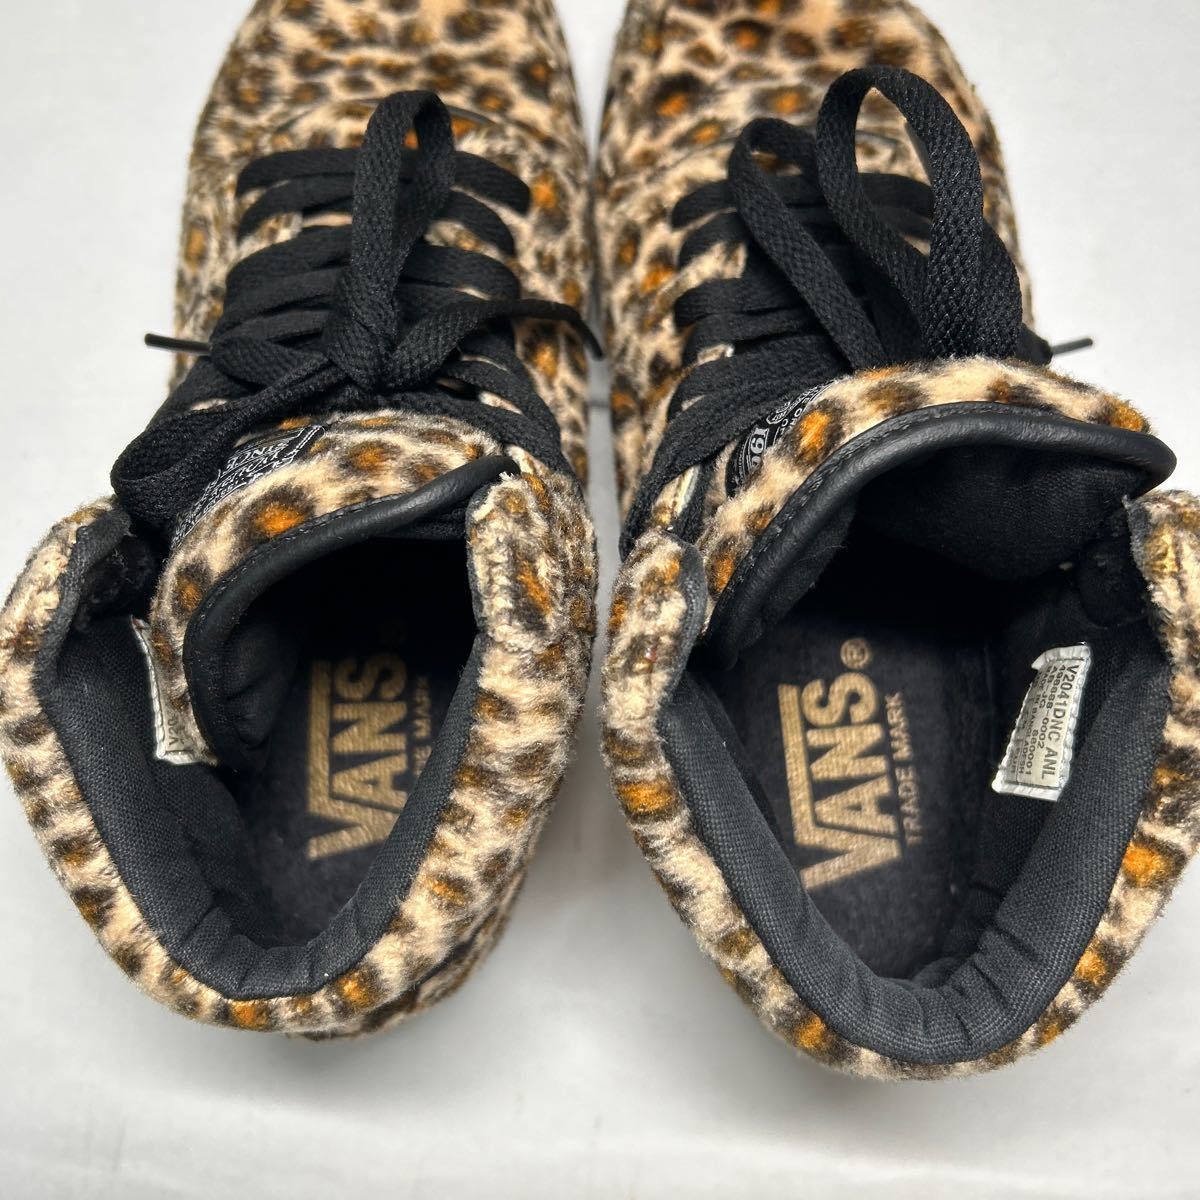 [VANS/ Vans ] - ikatto спортивные туфли Leopard леопардовая расцветка 24.5 ботинки искусственный мех 